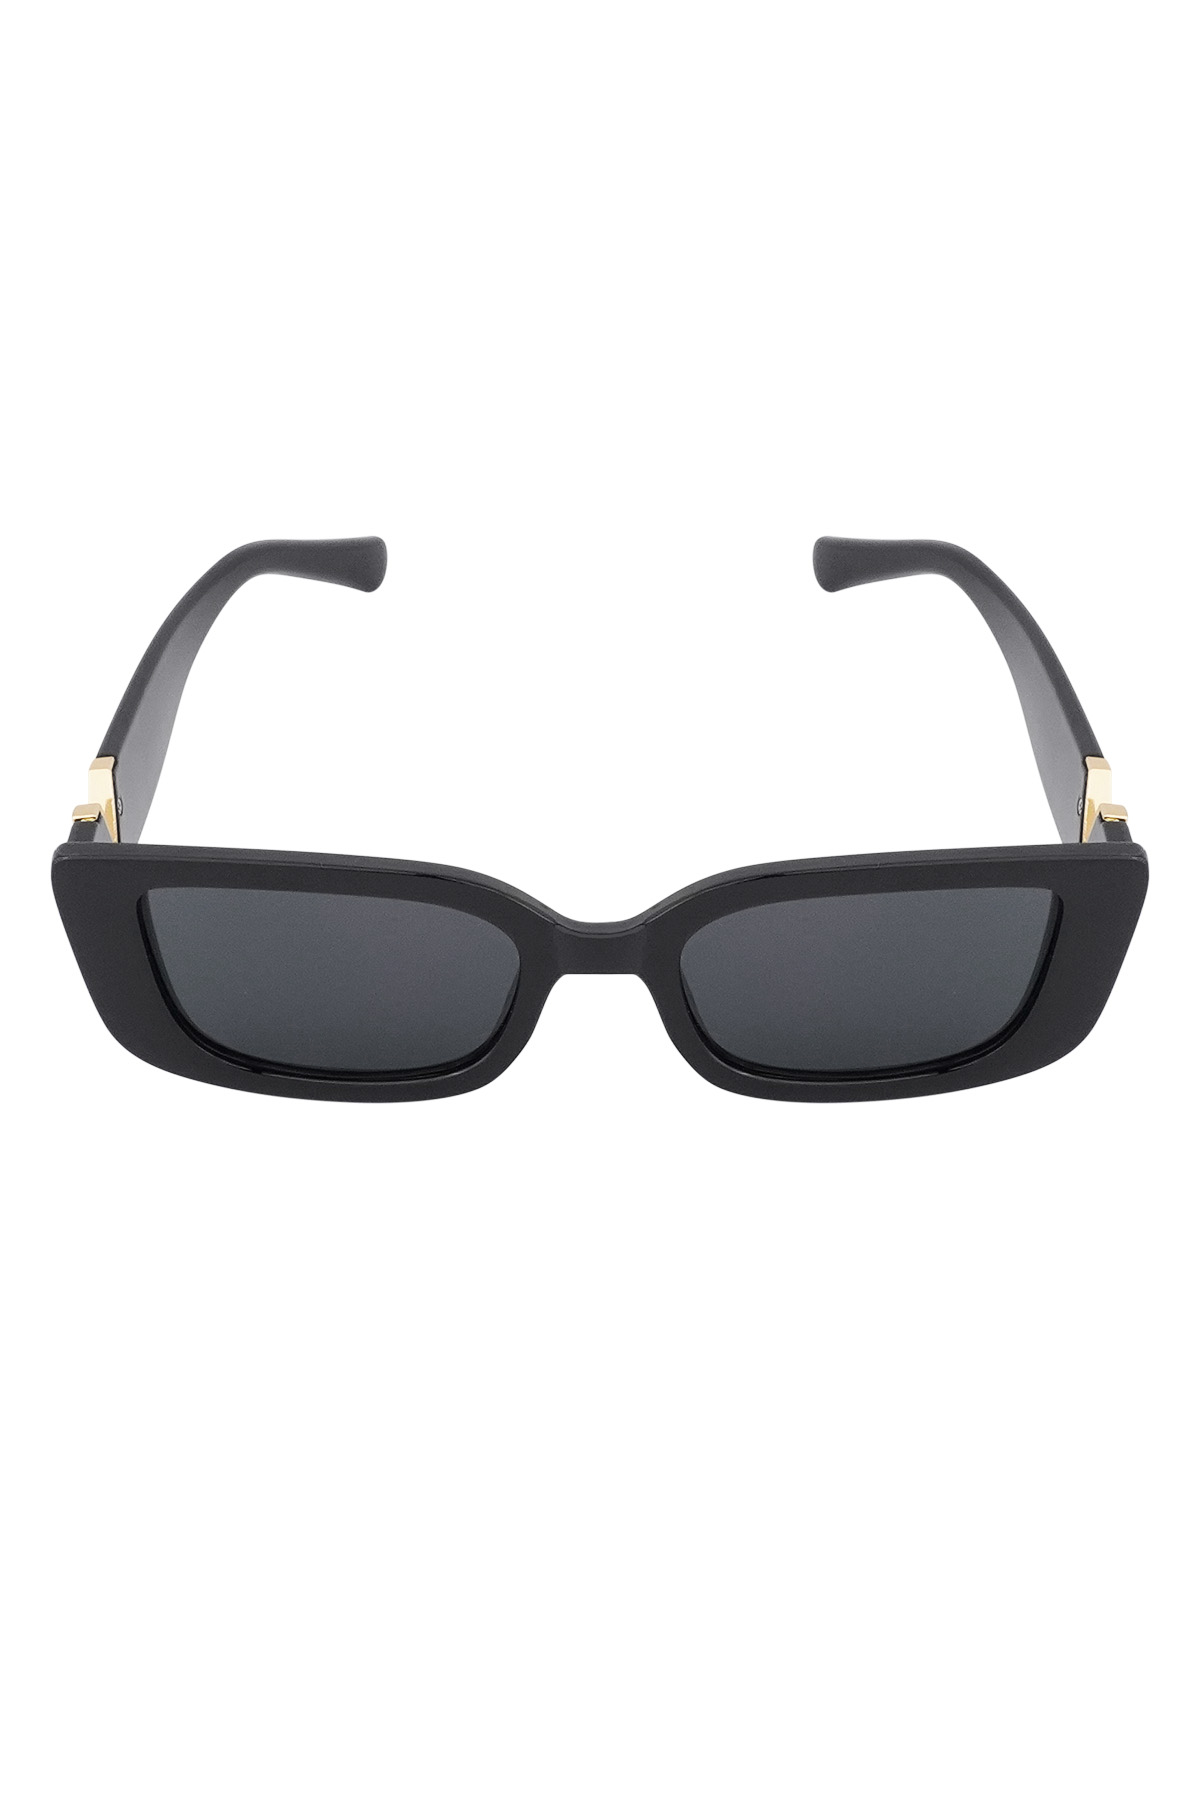 V ile klasik güneş gözlüğü - siyah Resim4